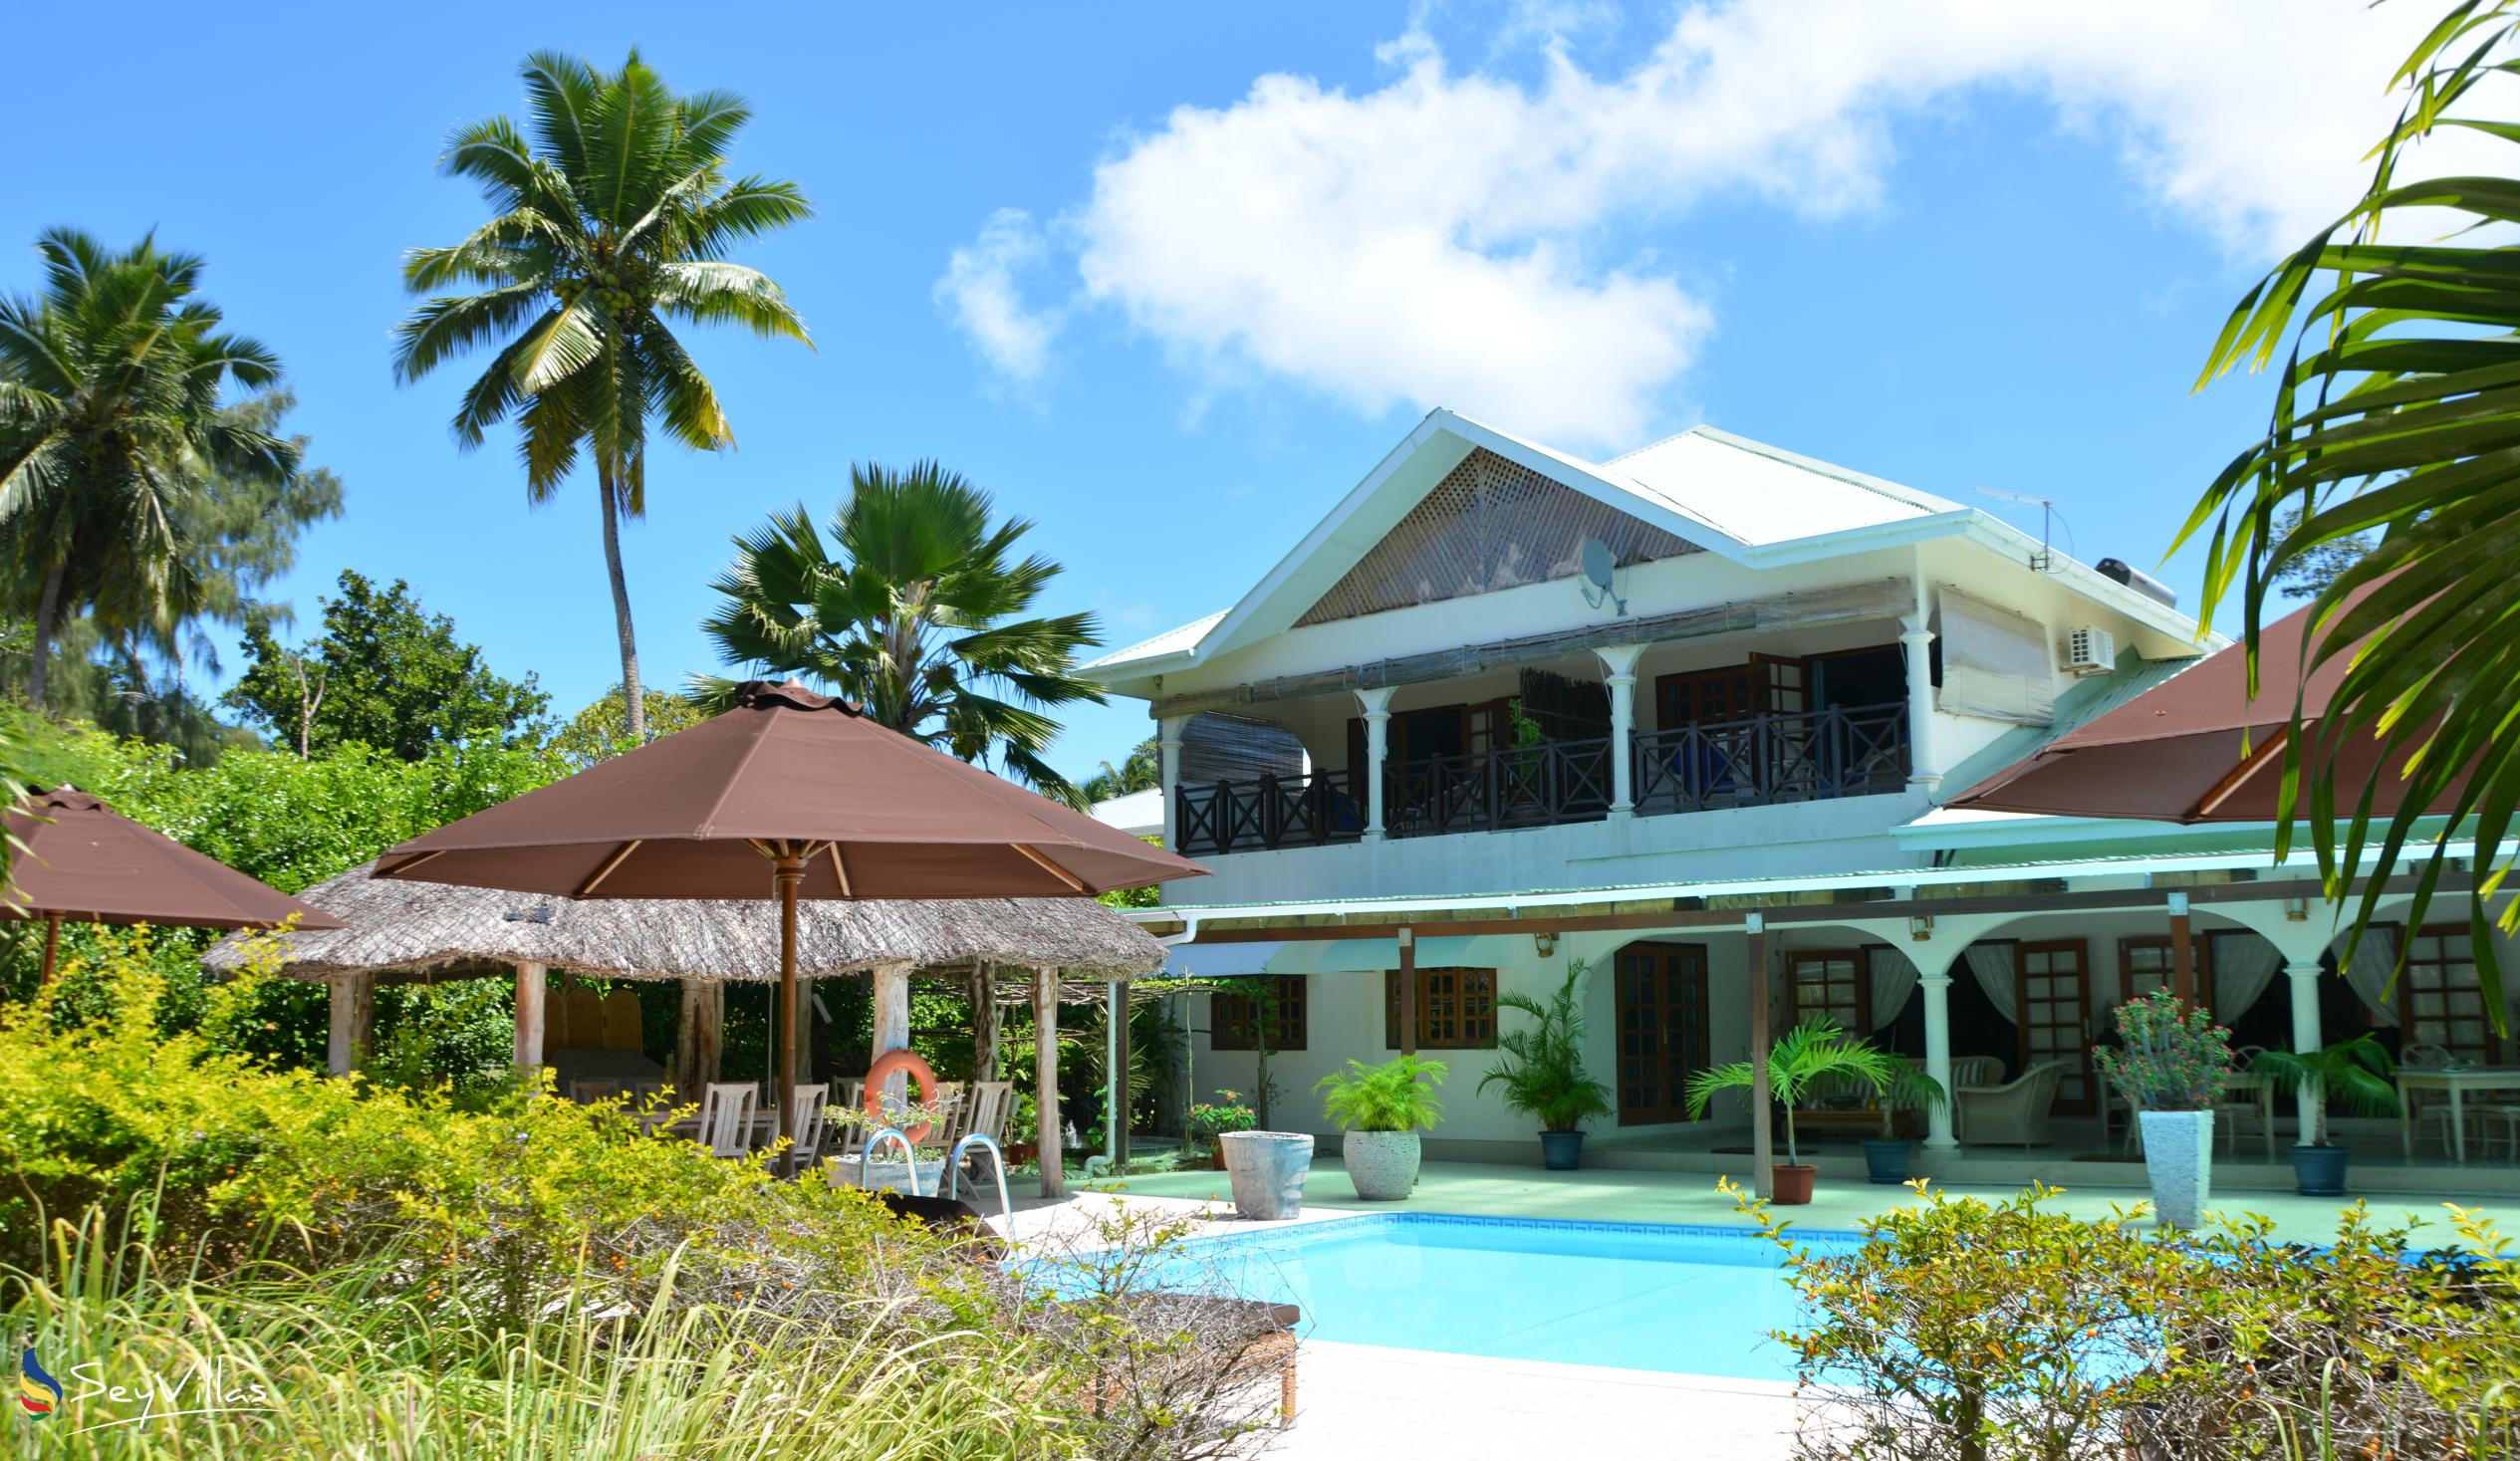 Foto 1: Villa de Cerf - Aussenbereich - Cerf Island (Seychellen)